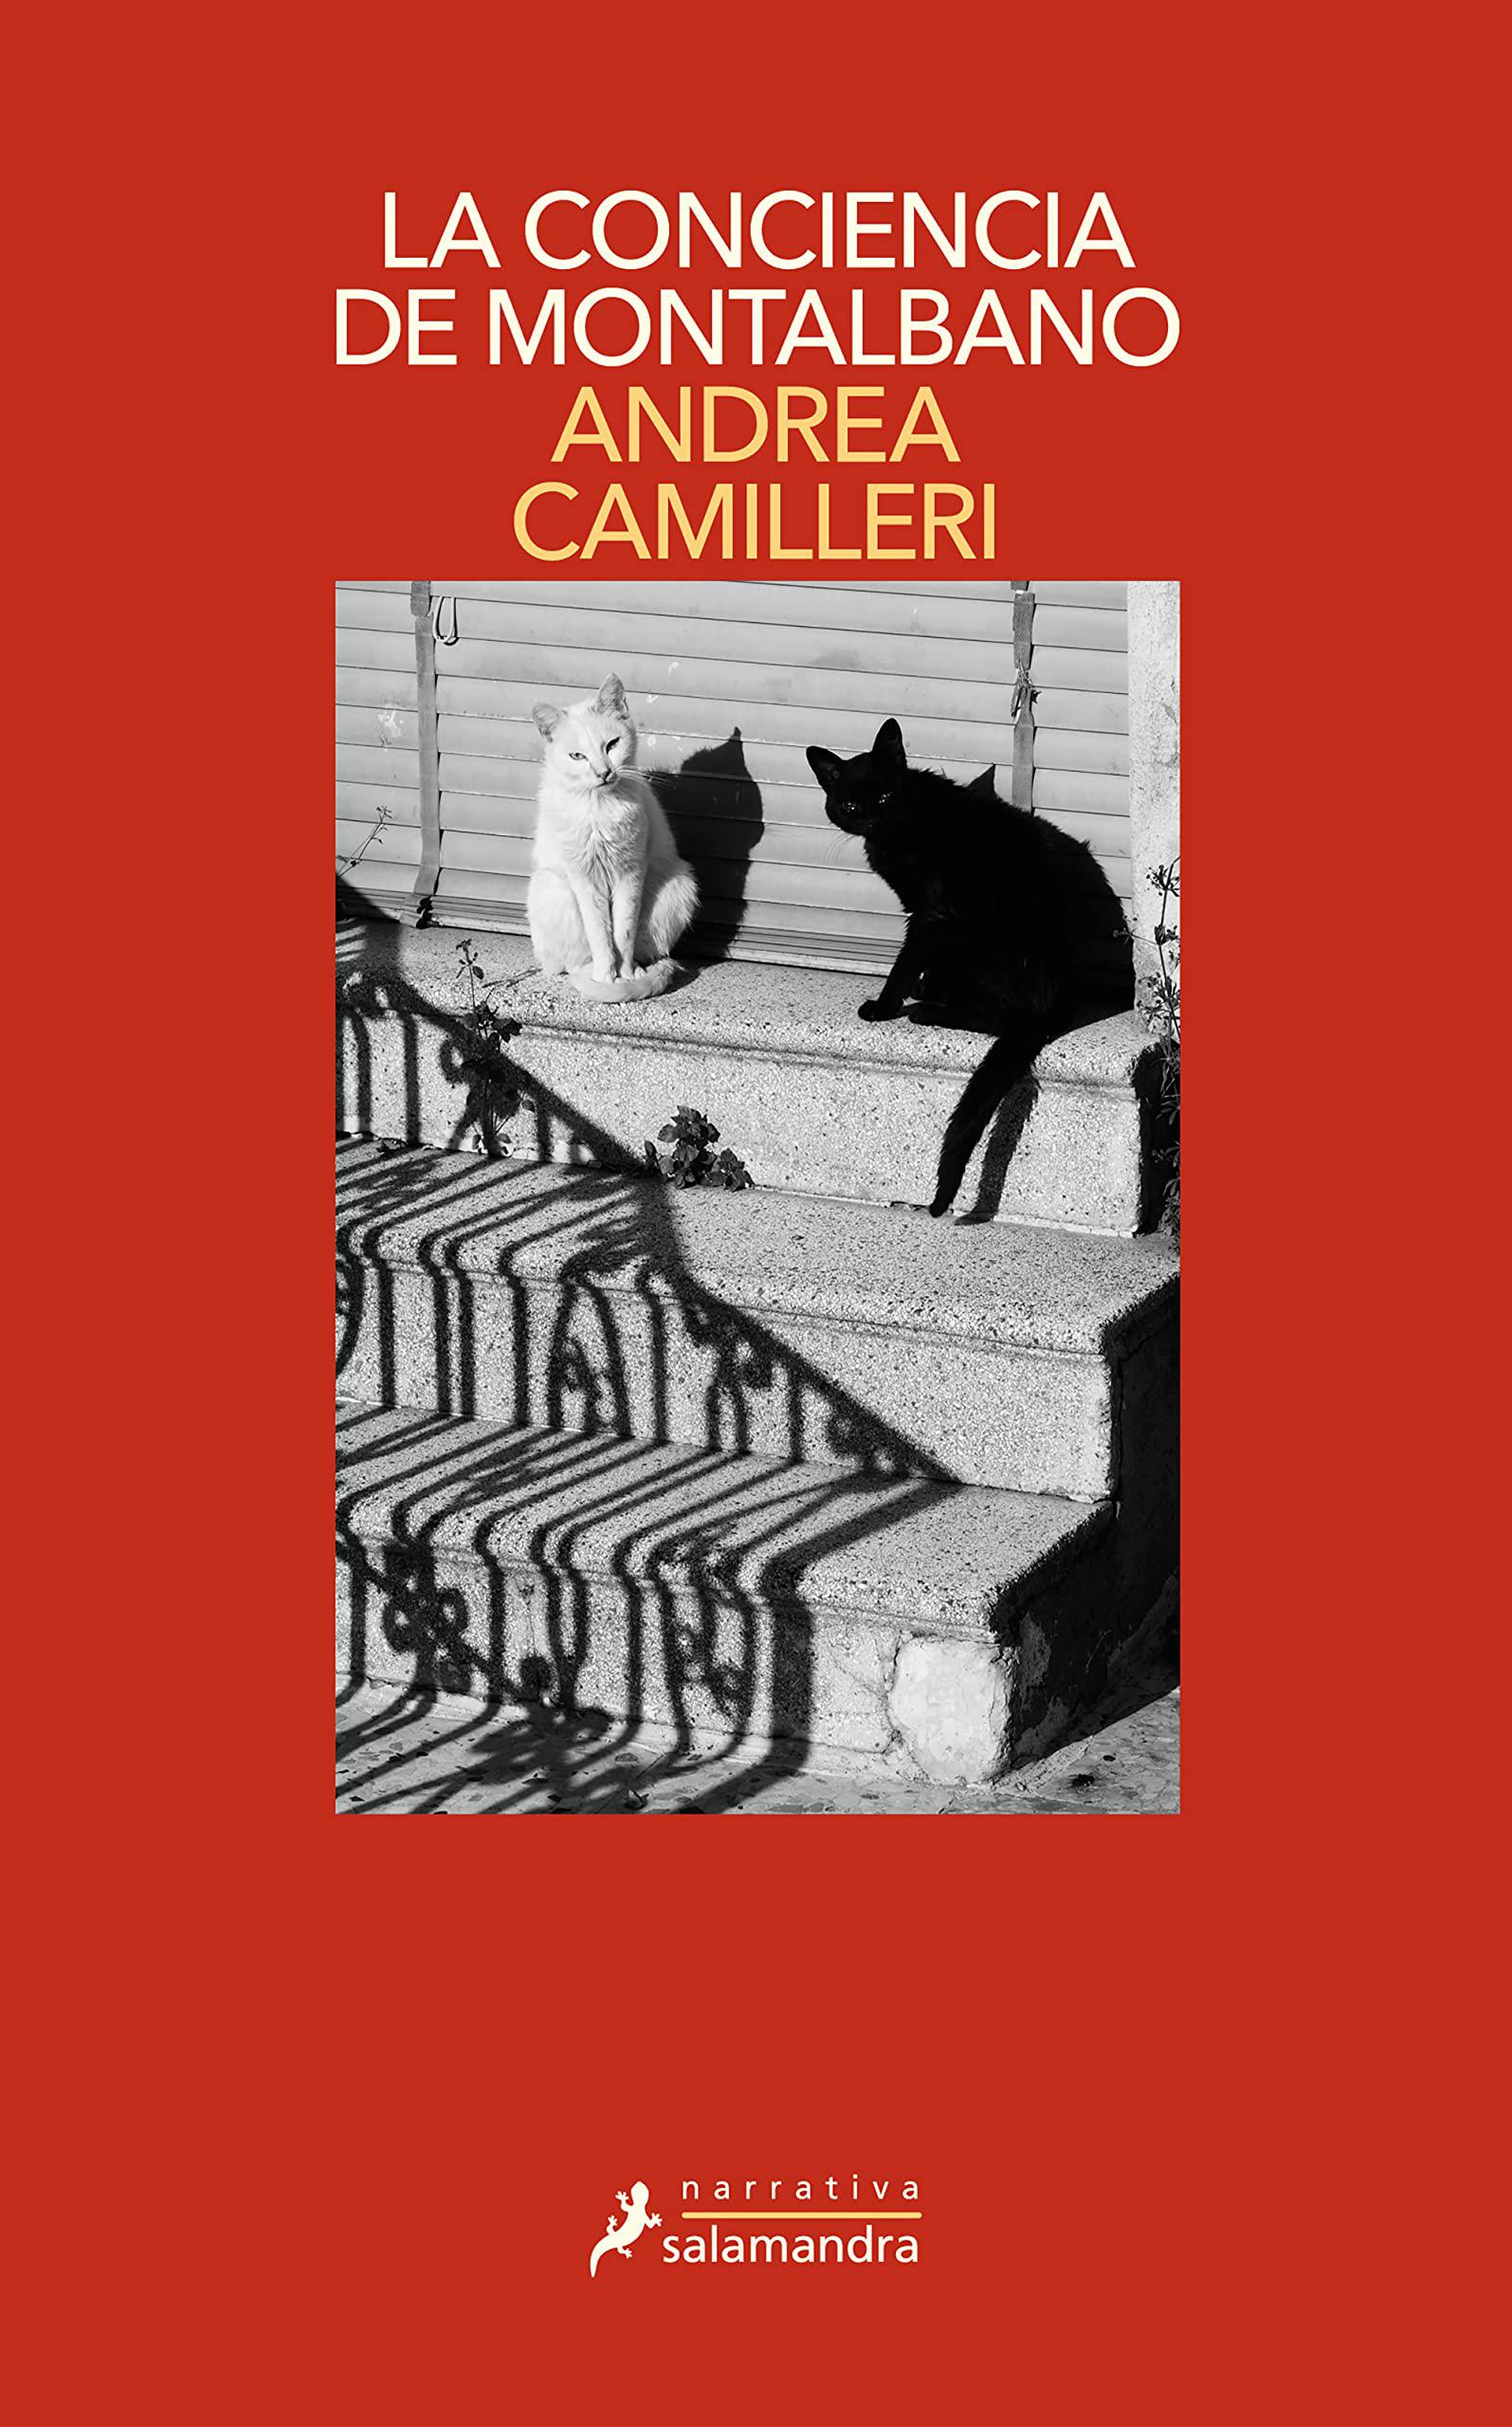 Portada de libros con dos gatos sobre una escalera